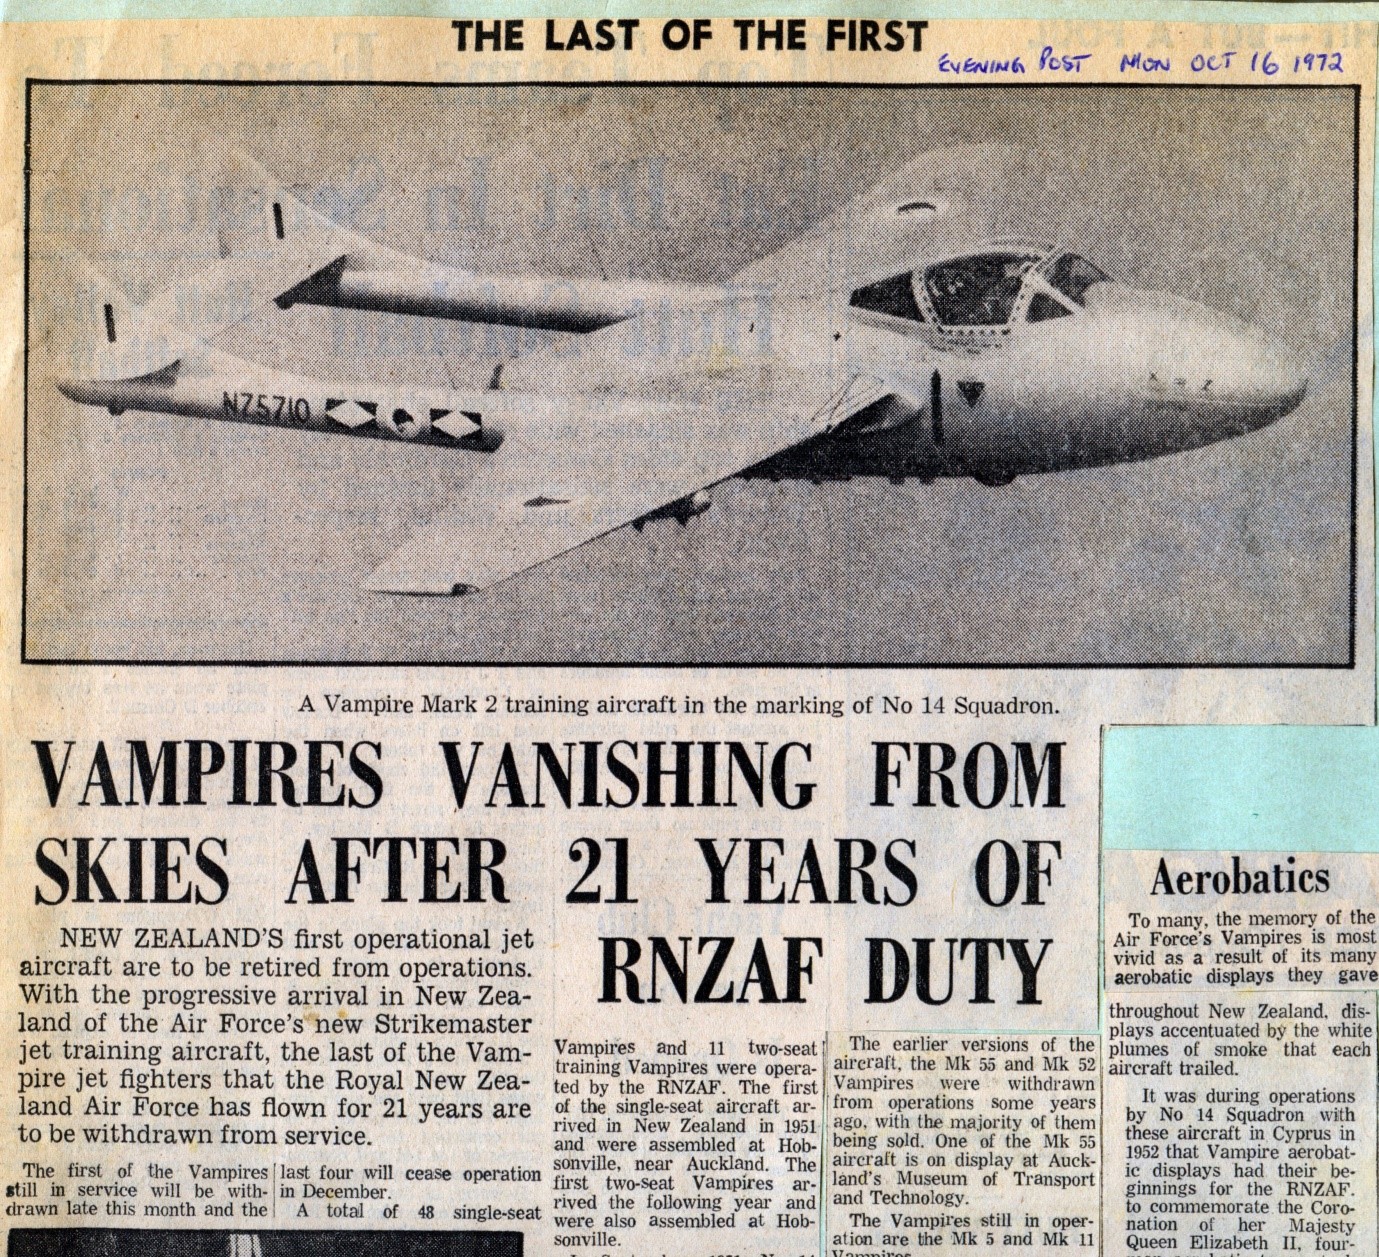 Vampires vanishing from skies after 21 years of RNZAF duty